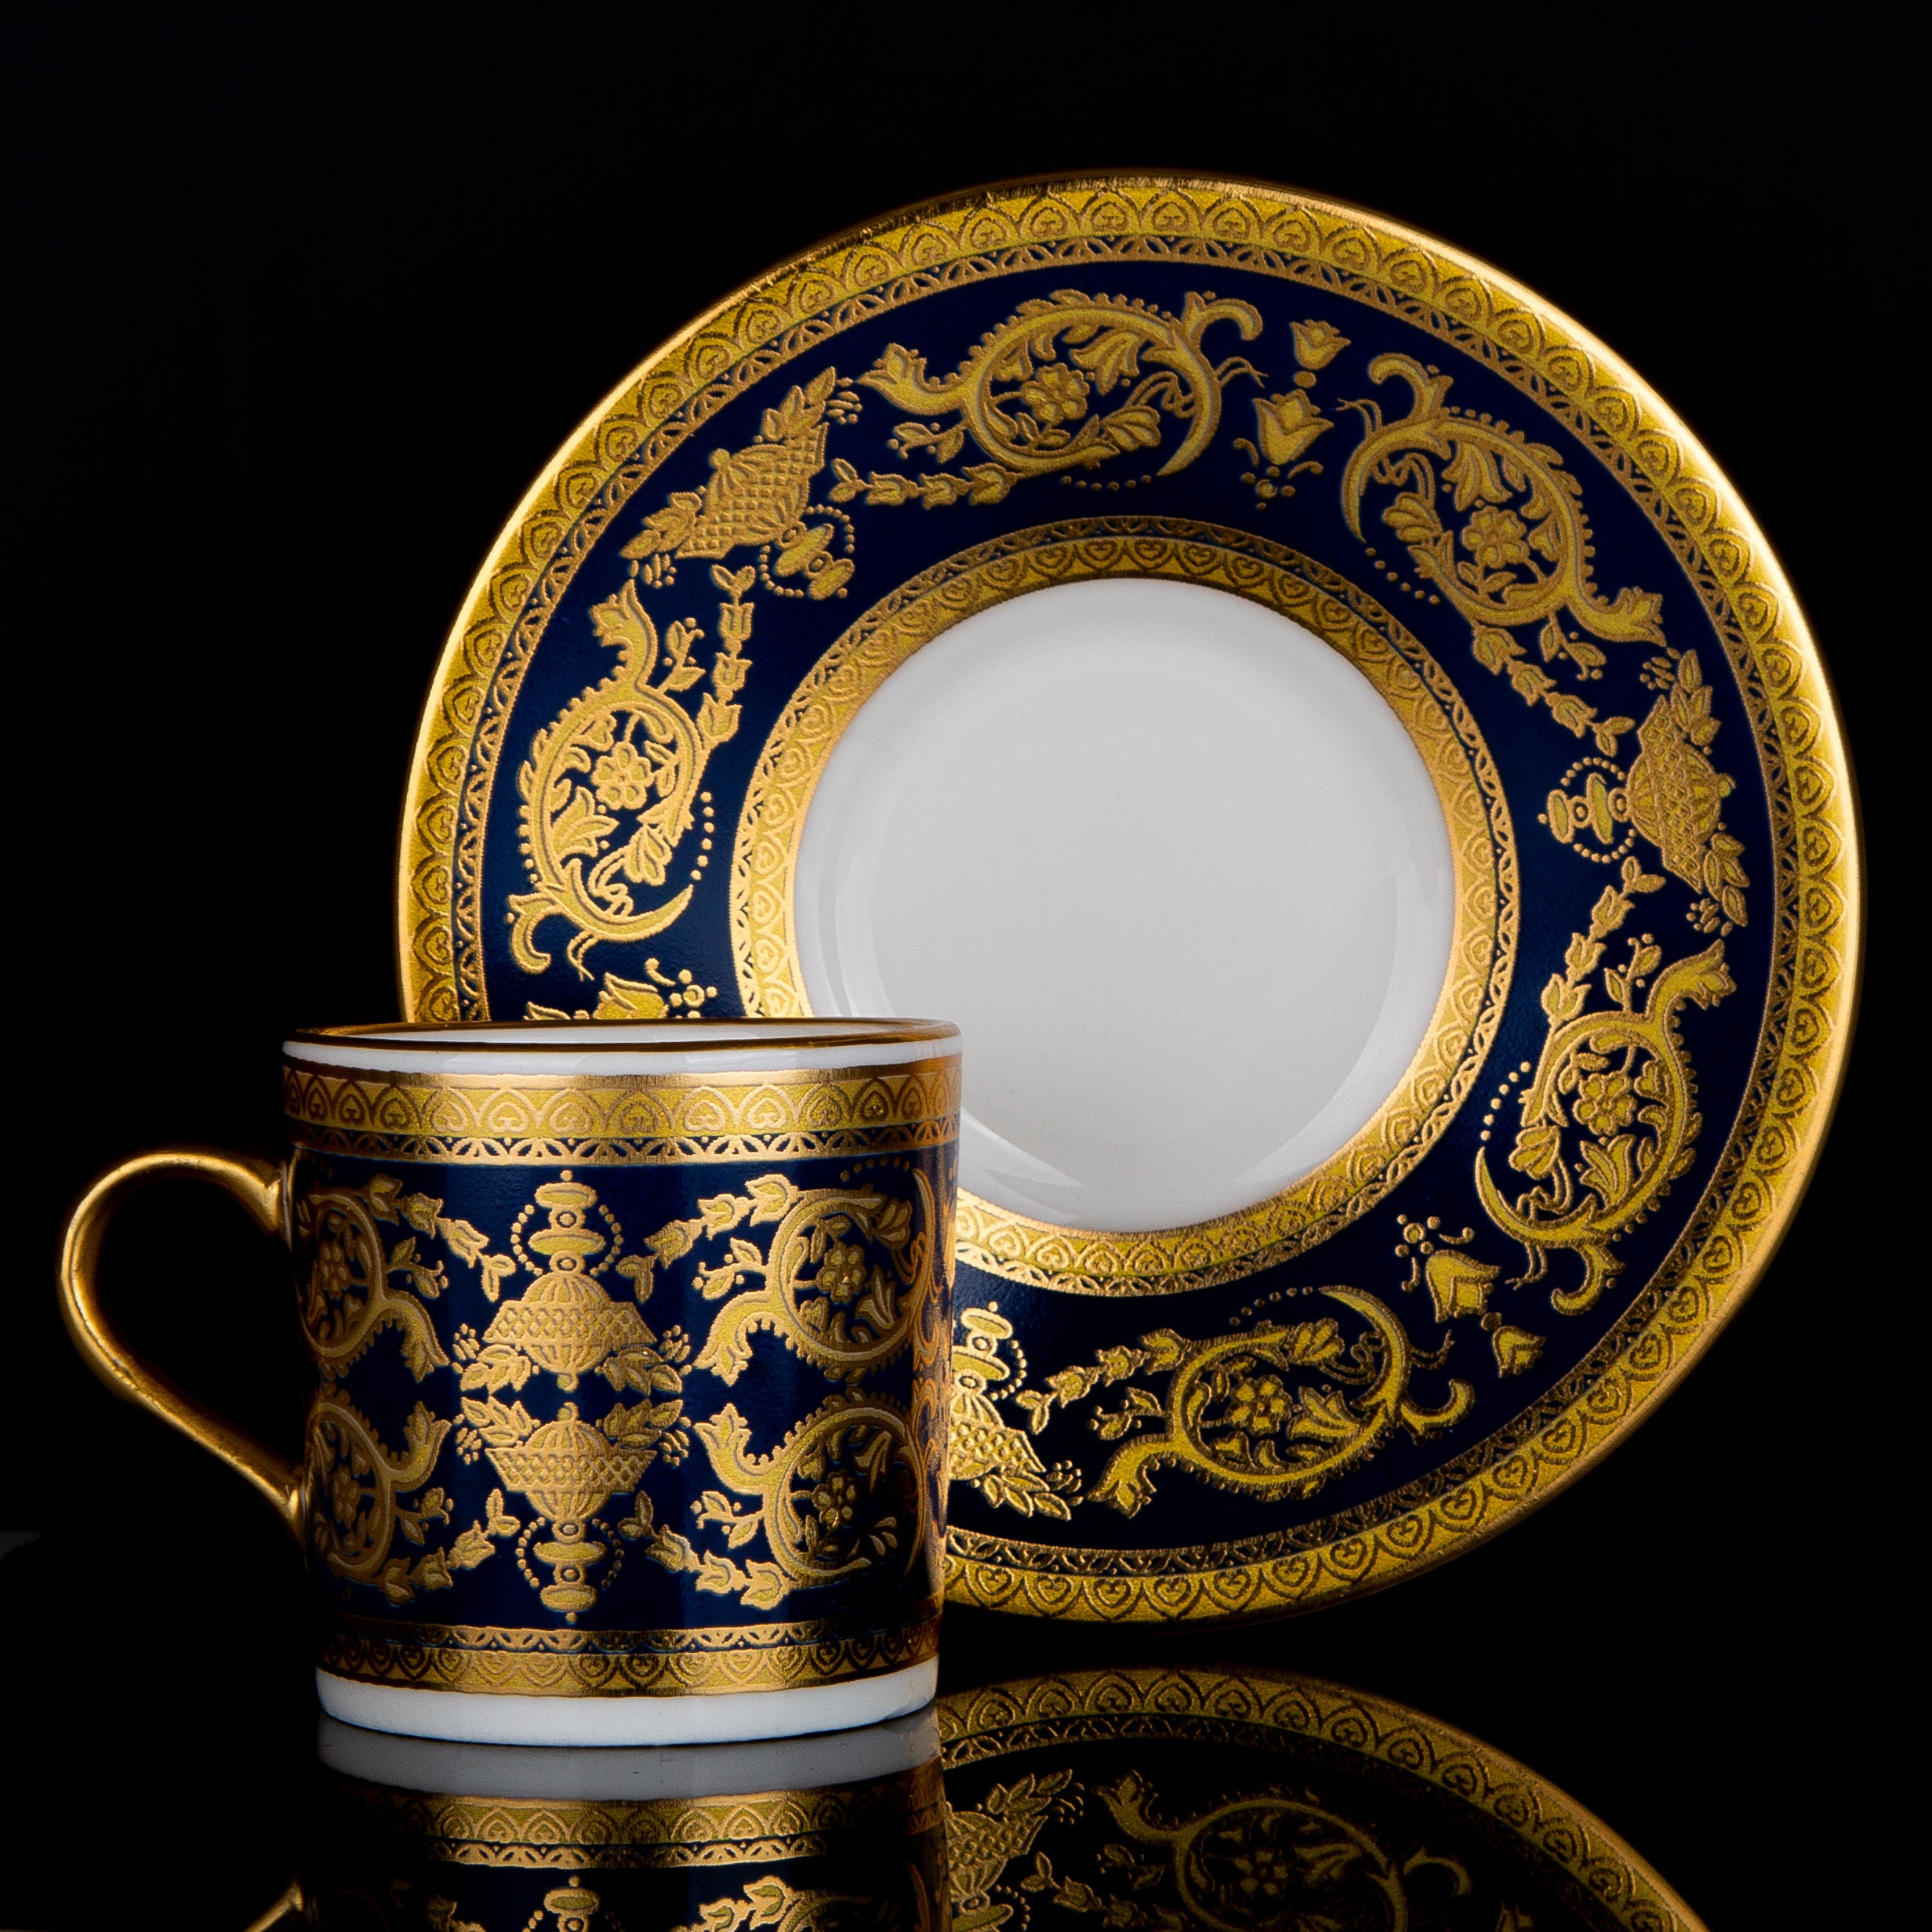 Original porcelain cup for sale  